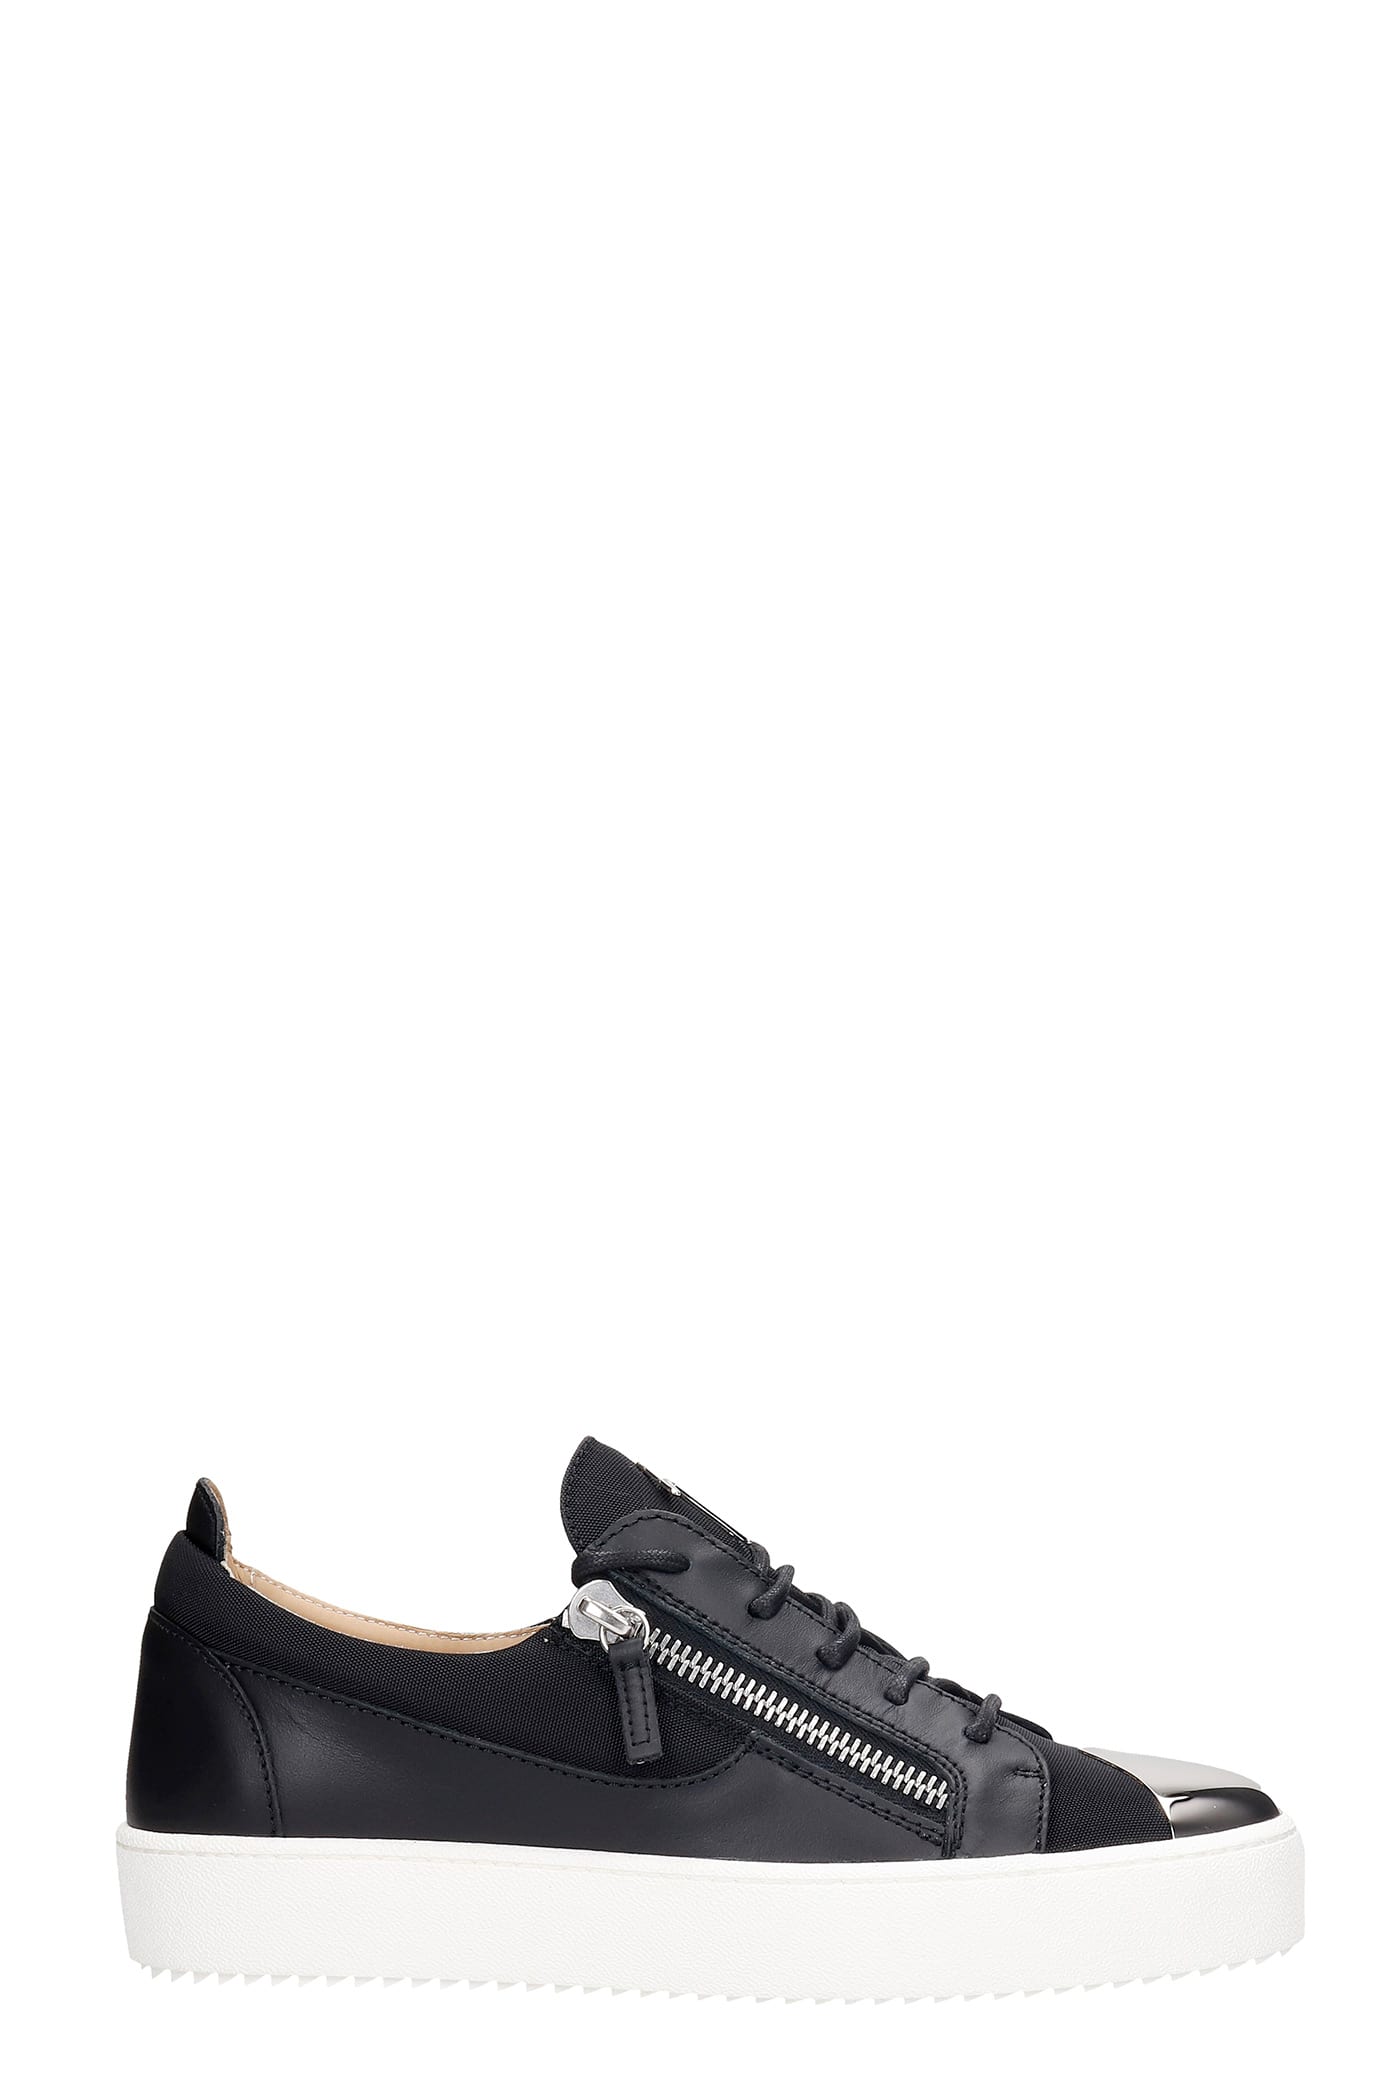 Giuseppe Zanotti Frankie Steel Sneakers In Black Synthetic Fibers